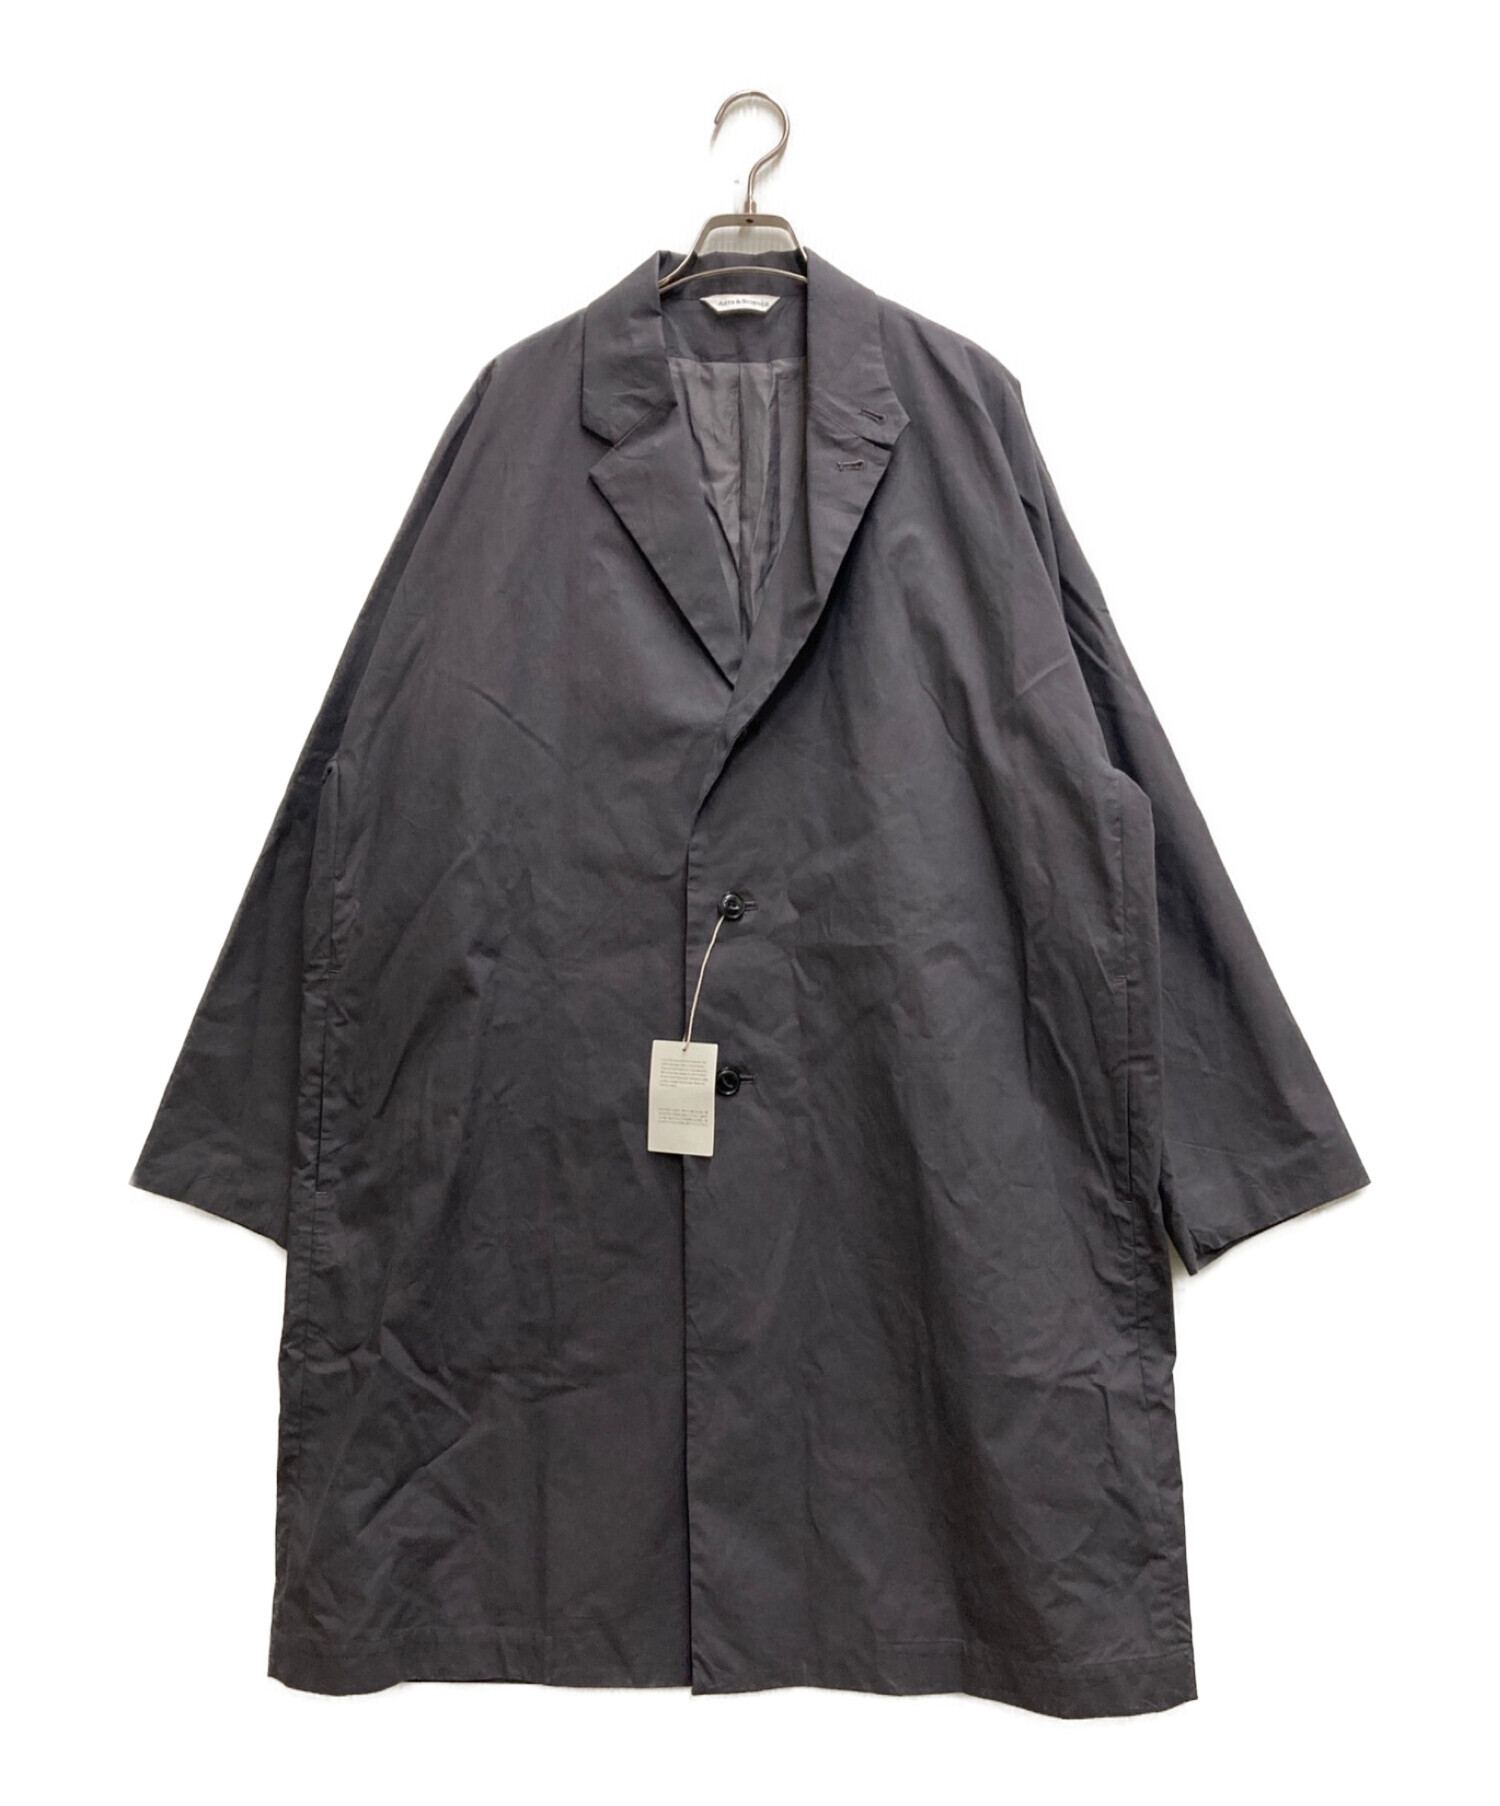 ARTS&SCIENCE (アーツアンドサイエンス) grandpa city coat si グレー サイズ:3